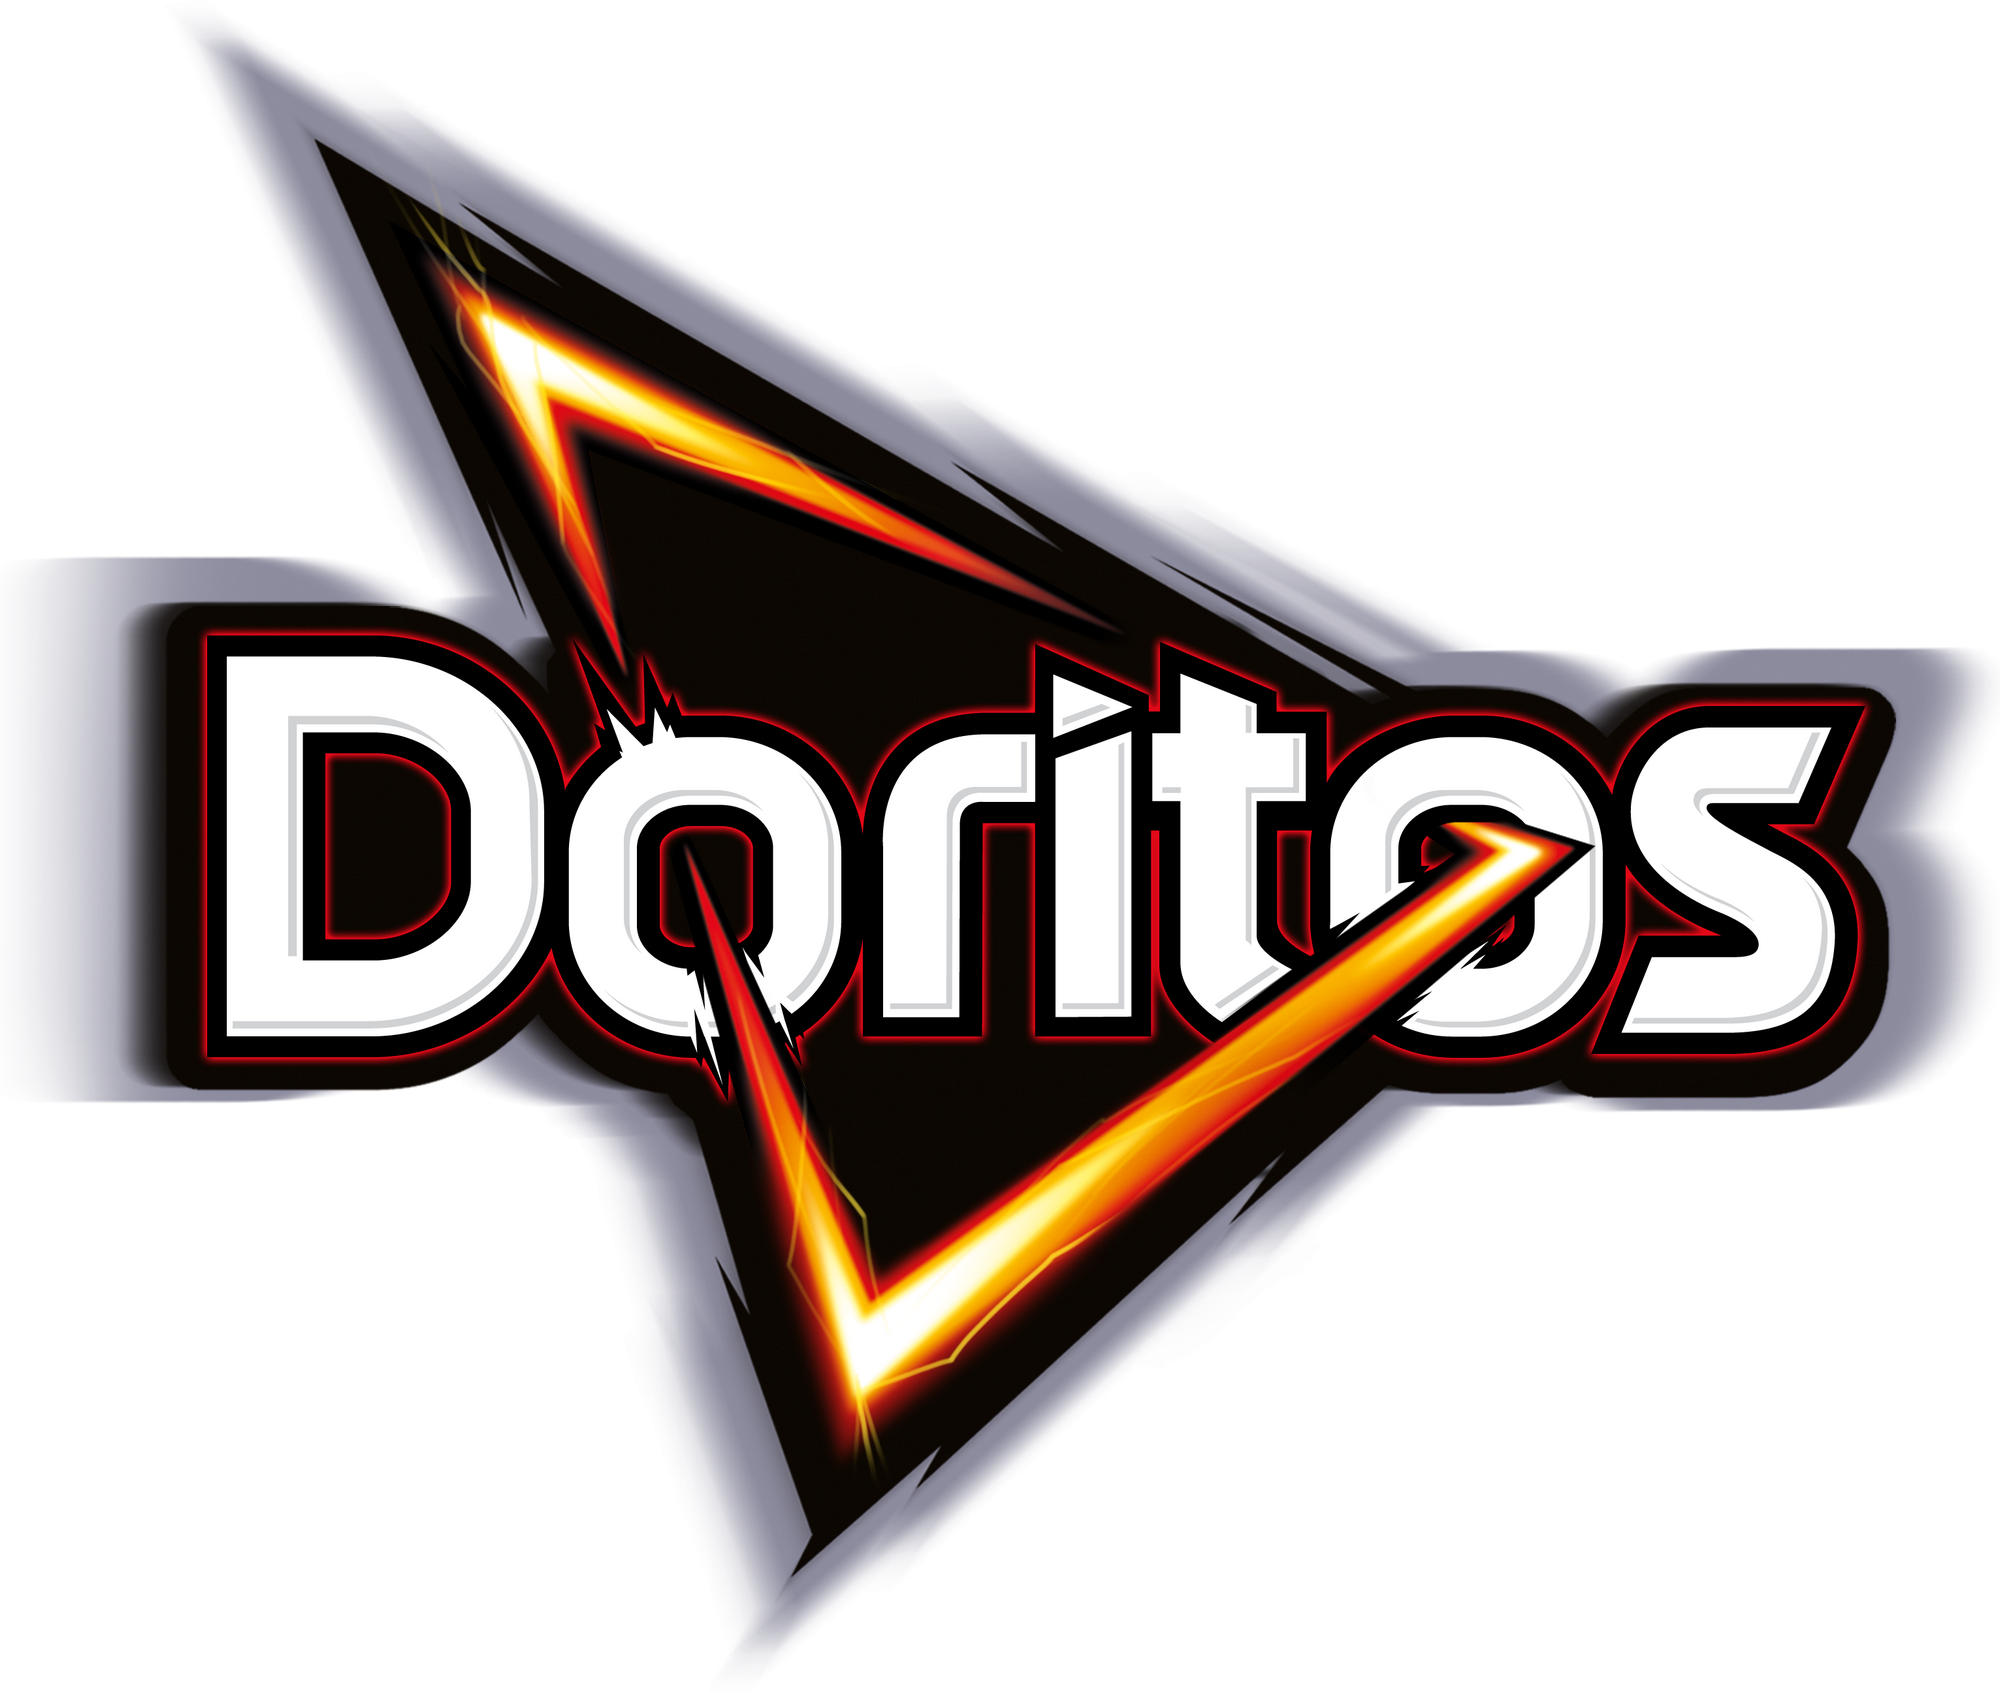 Doritos Logo Vector at Vectorified.com | Collection of Doritos Logo